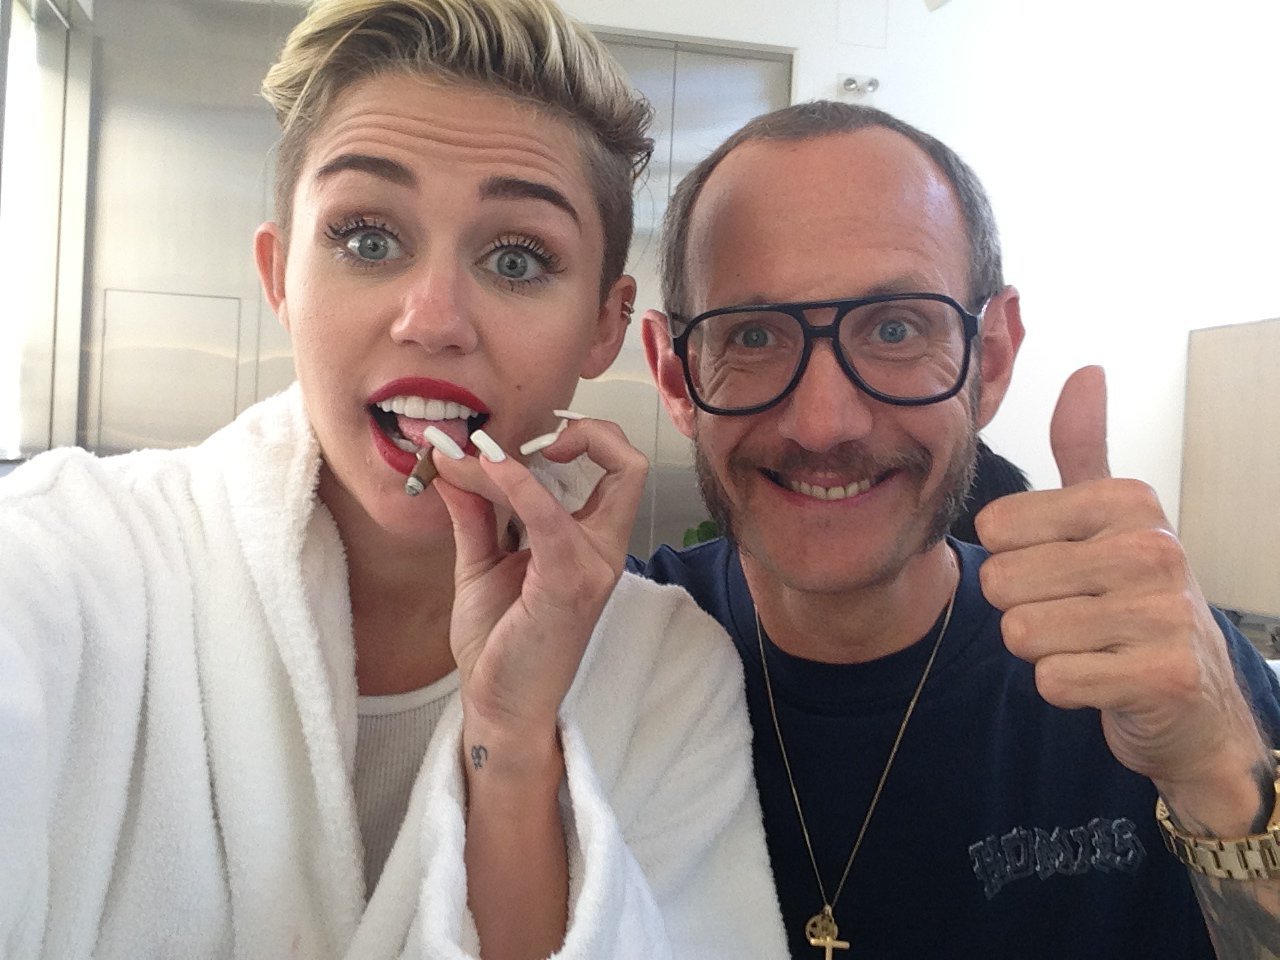 Miley Cyrus Personal Photos Hacked ~ Celebrity Gossip